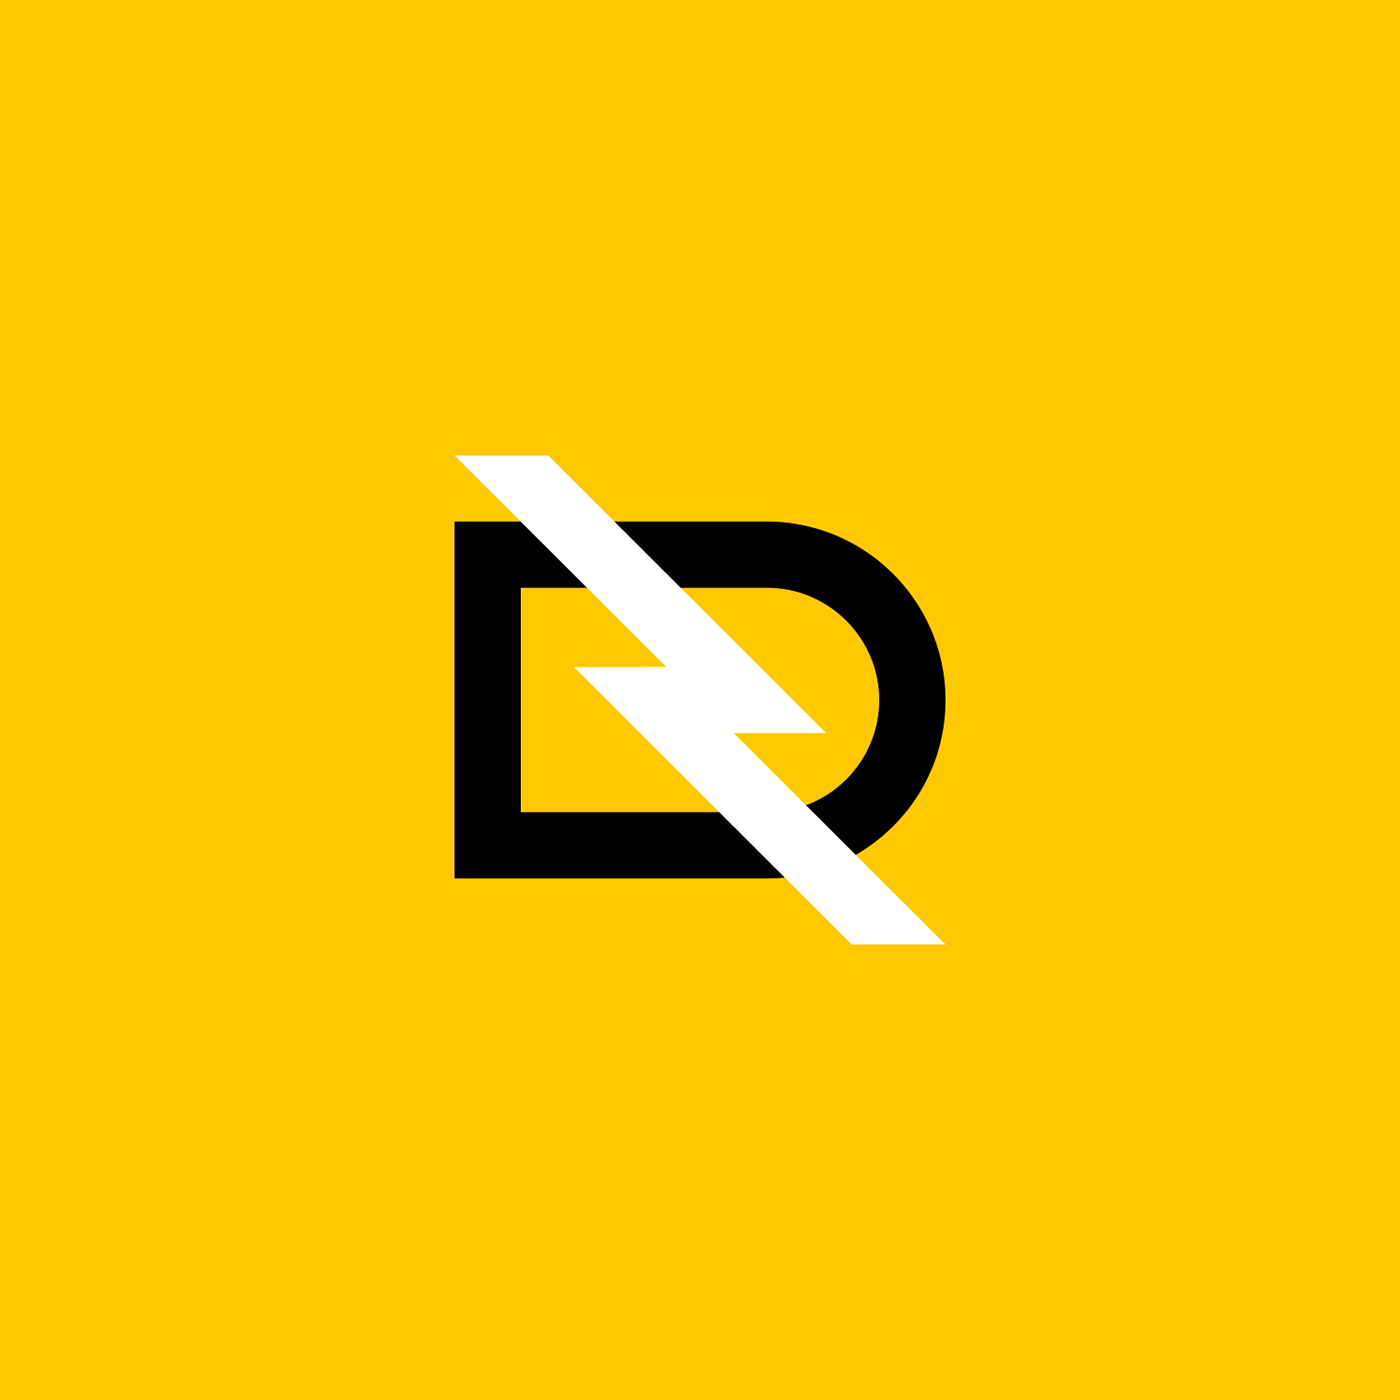 lightning bolt DQ qd monogram logomark logo yellow black White